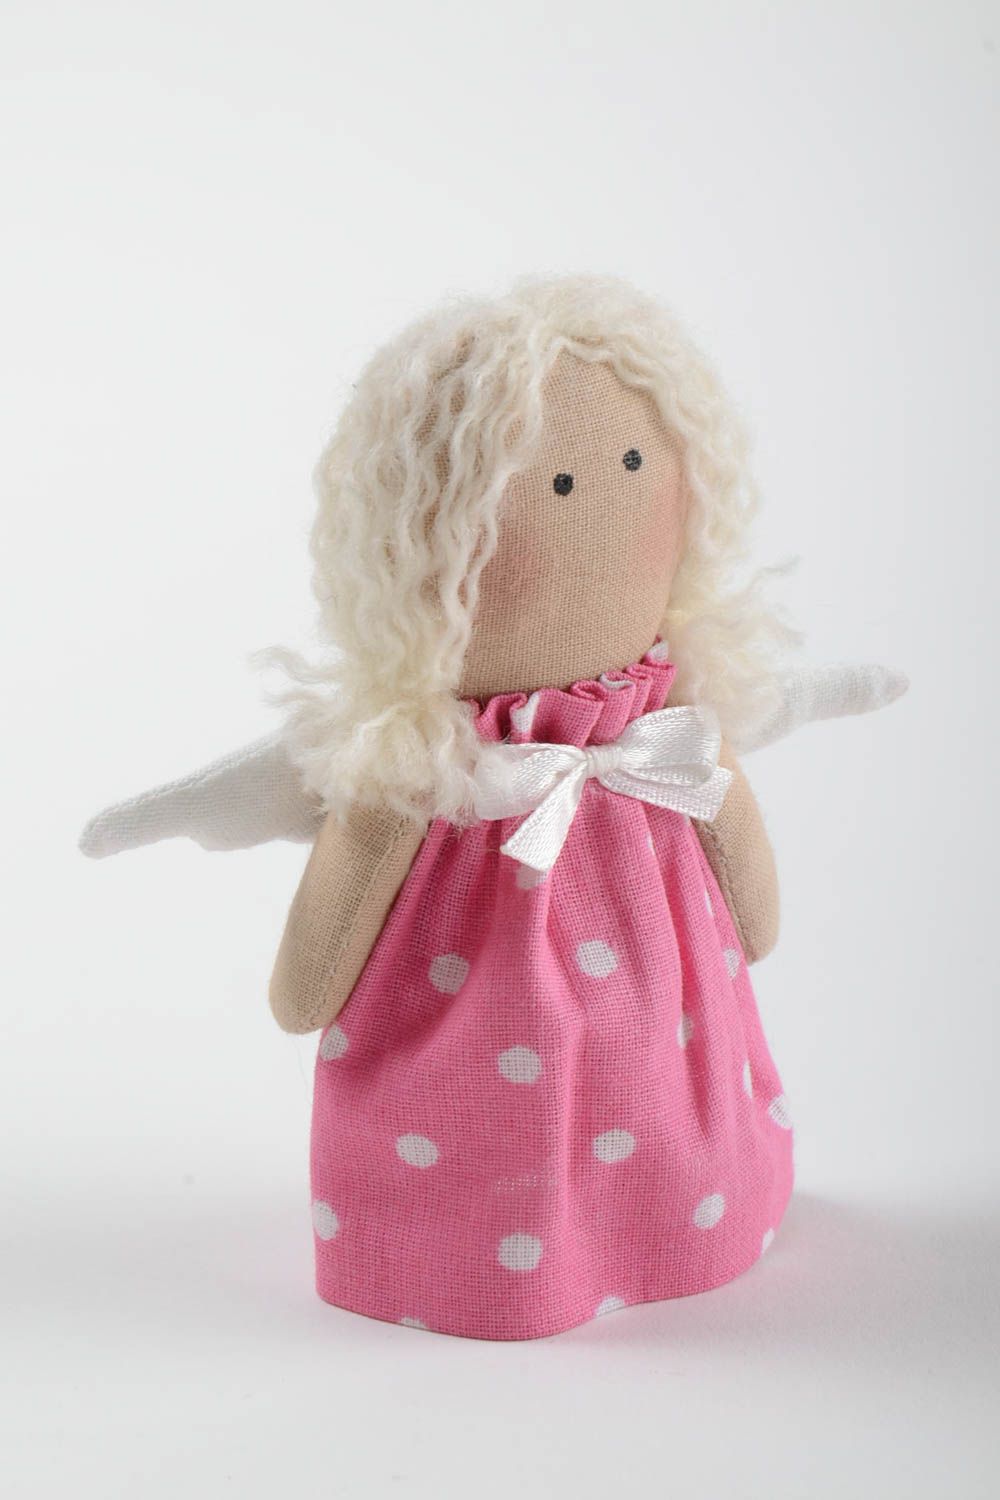 Handmade Stoff Puppe Kinder Spielzeug Engel Geschenk klein im rosa Kleid foto 2